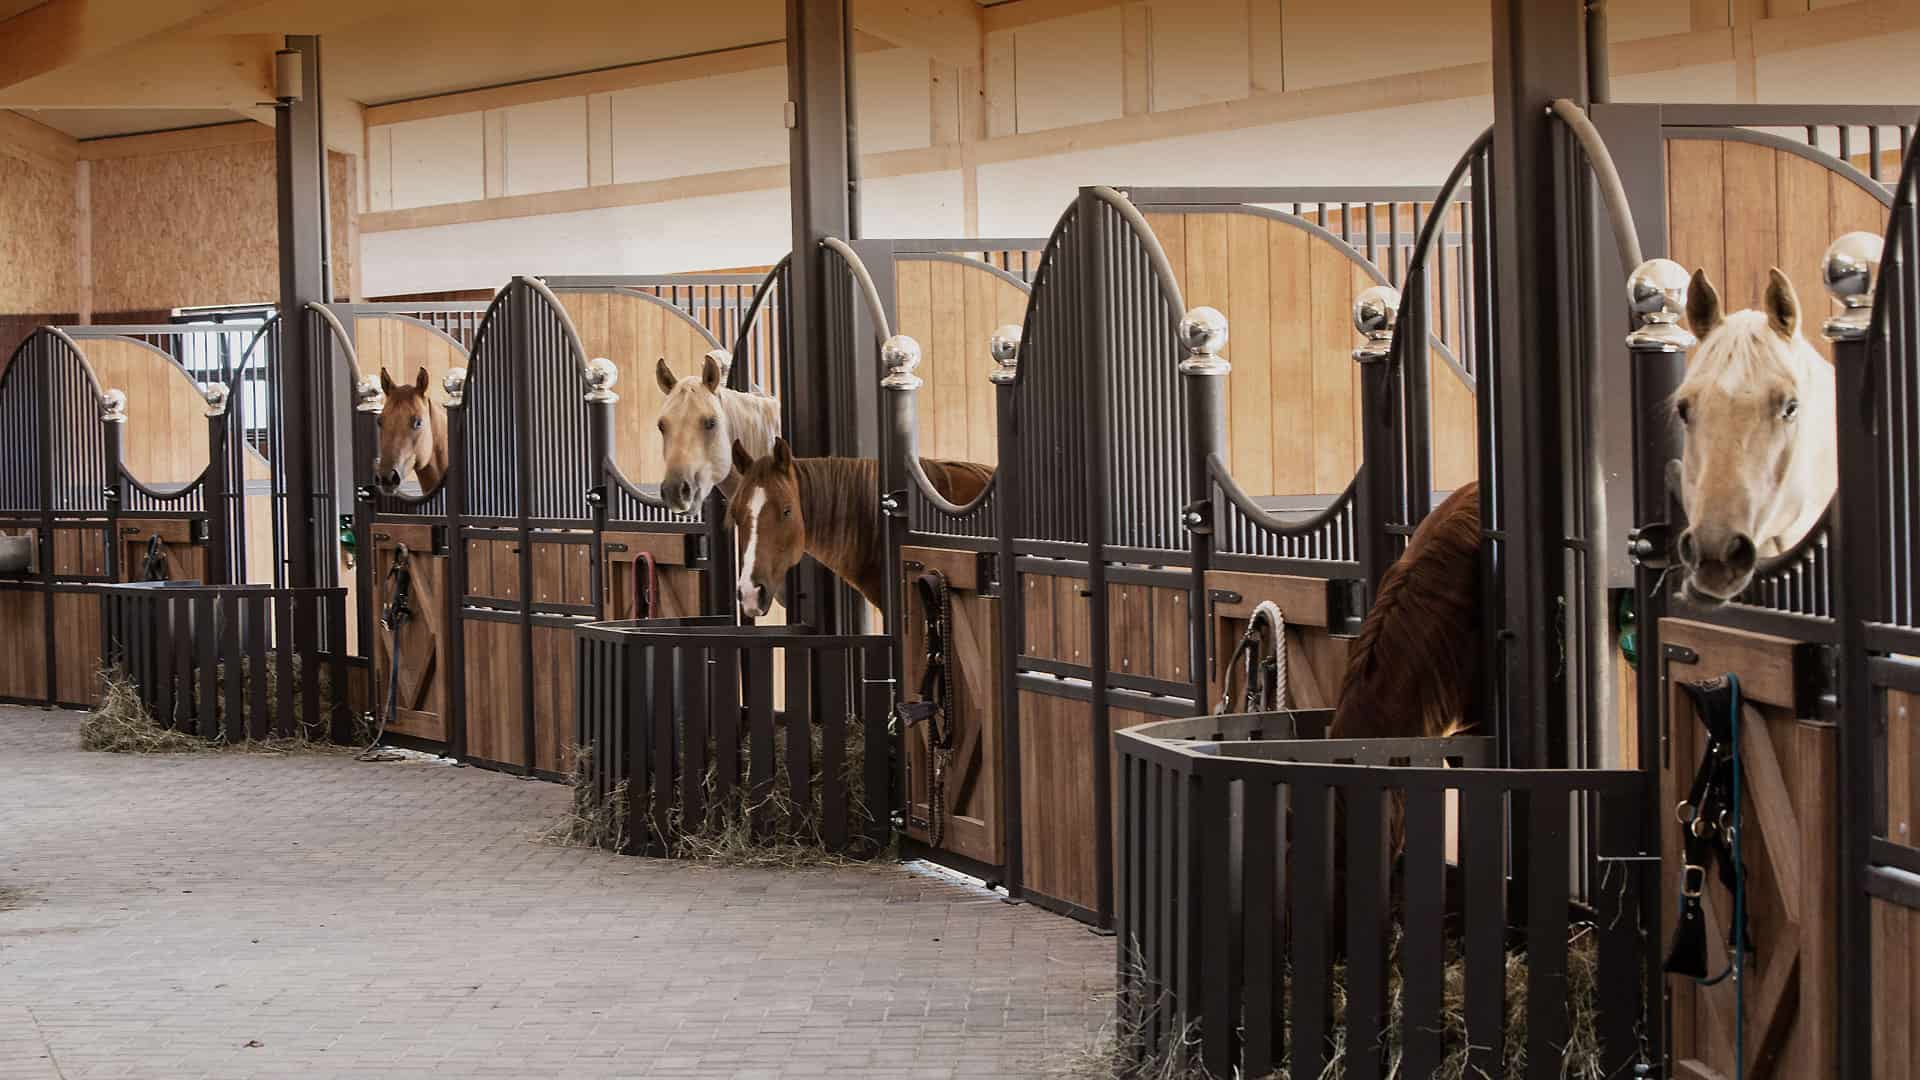 Sechs Pferdeboxen mit Pferden im Pferdestall